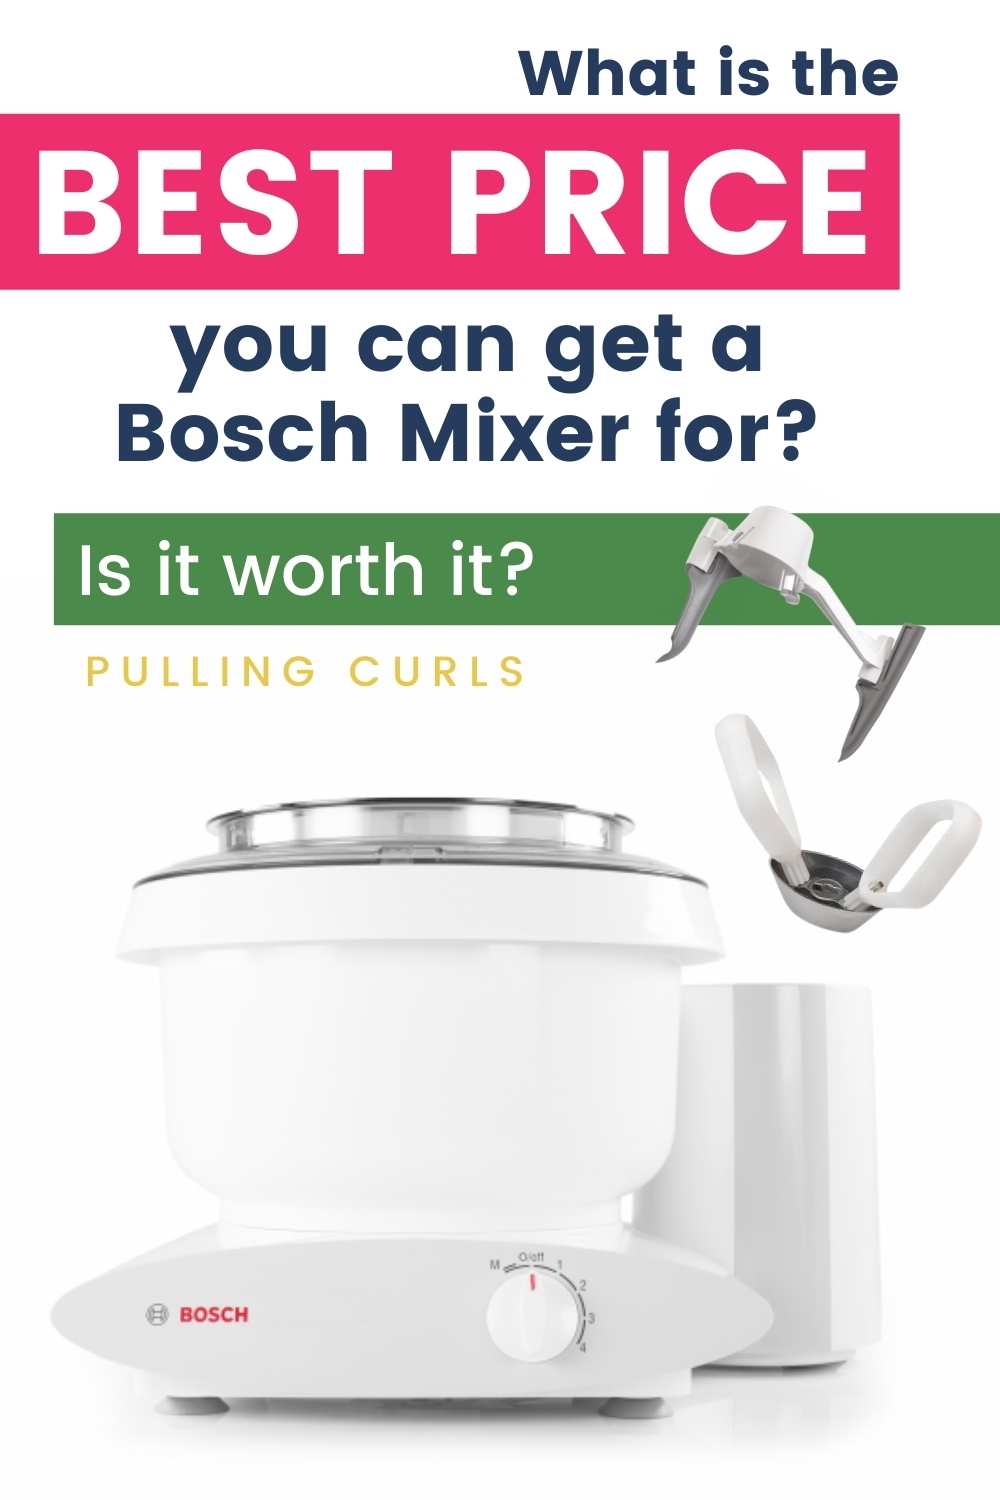 https://www.pullingcurls.com/wp-content/uploads/2019/08/Bosch-Mixer-1.jpg